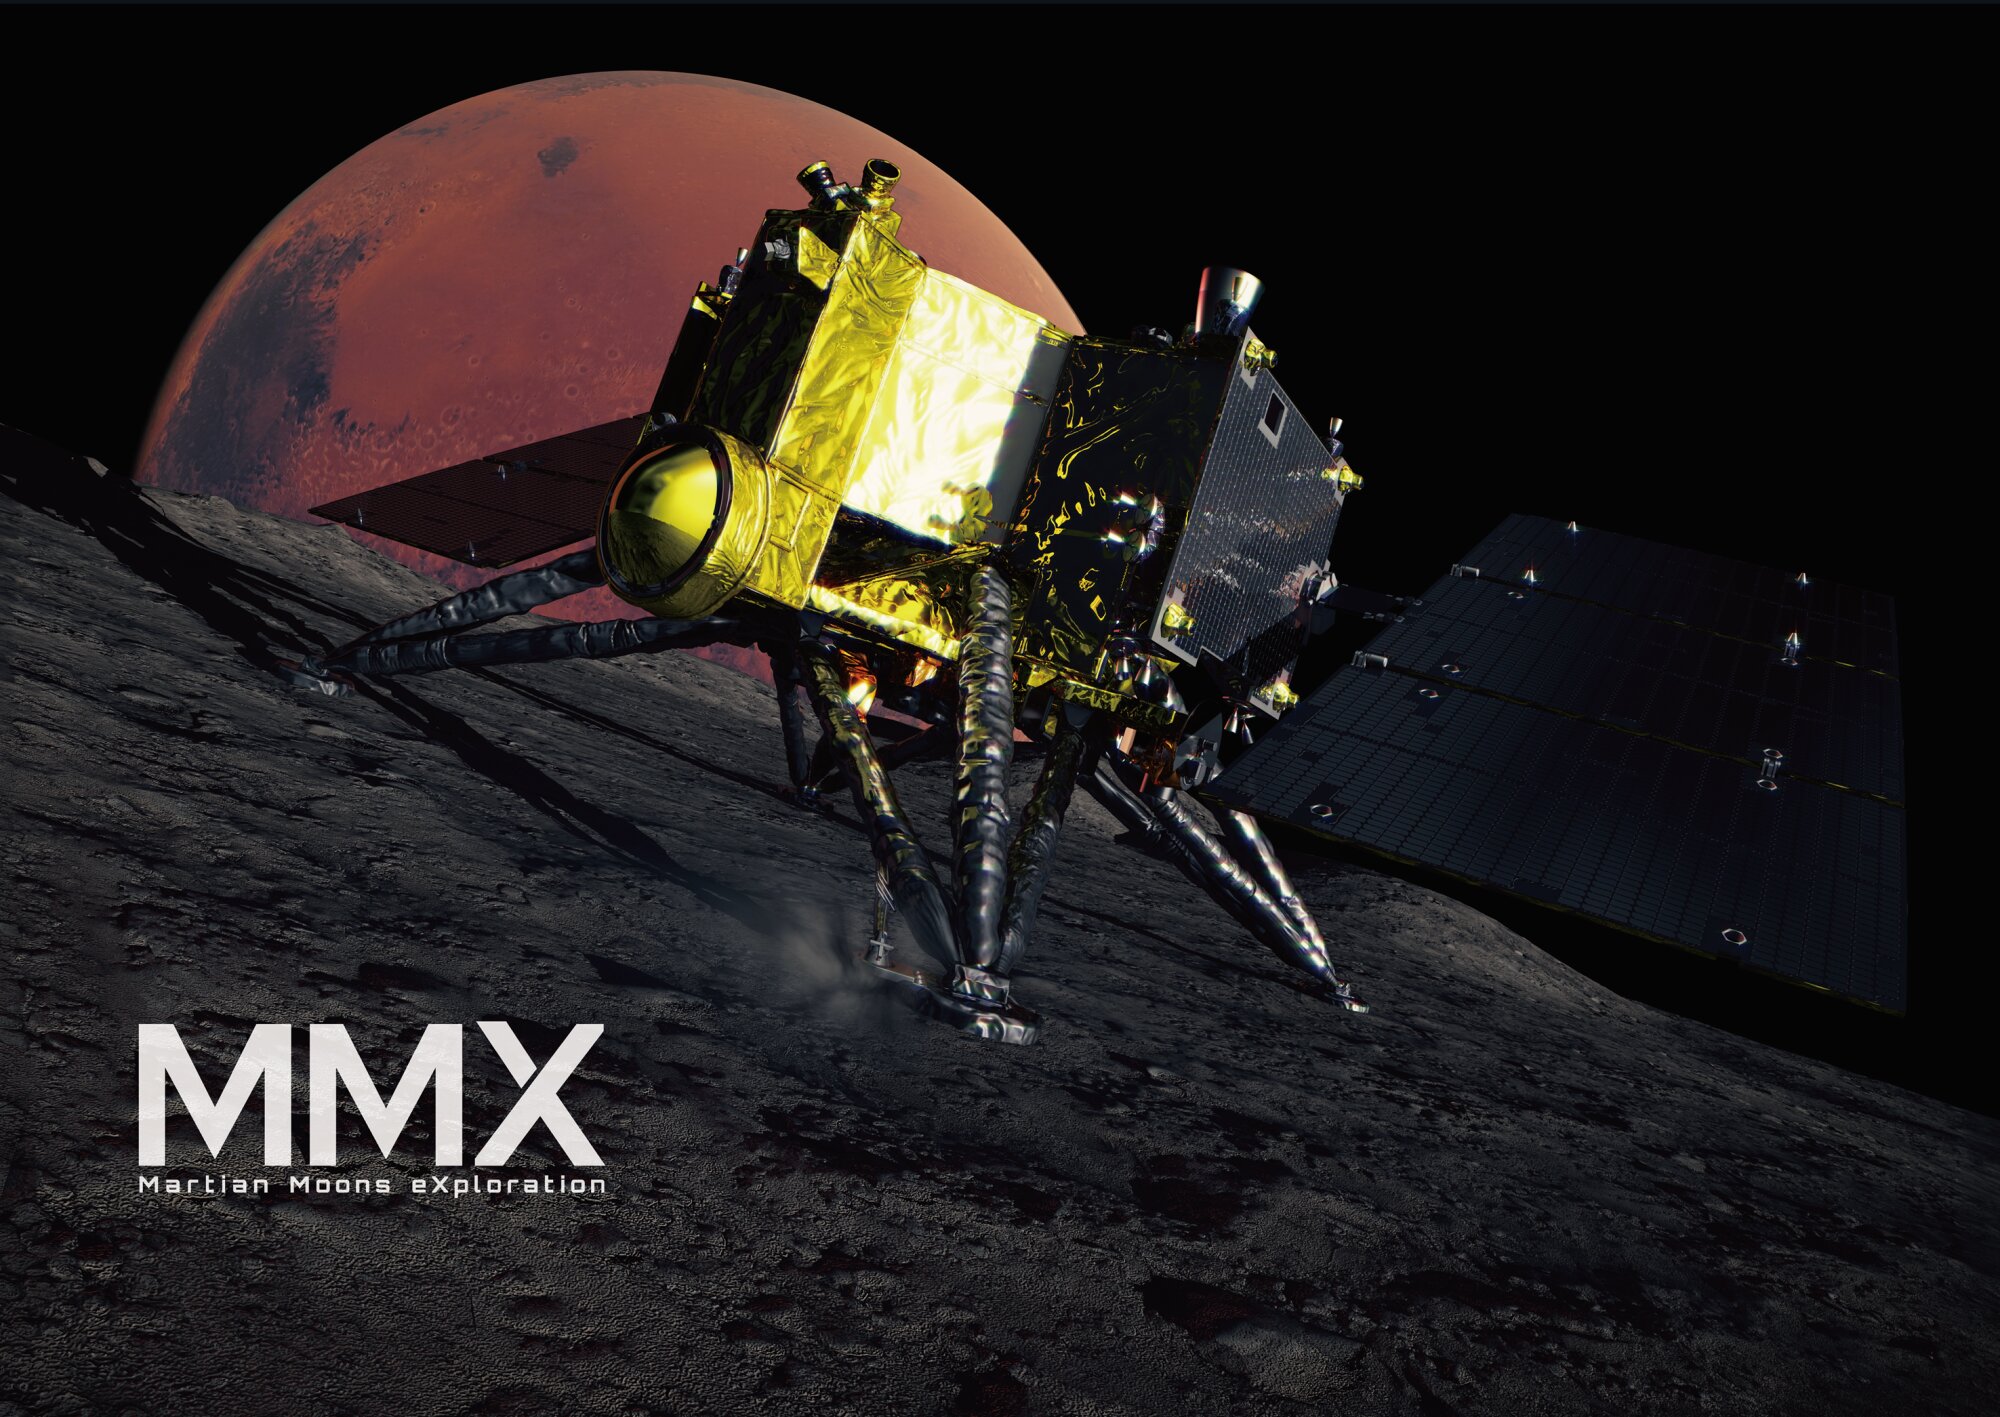 火星衛星探査計画「MMX」 出典:JAXA